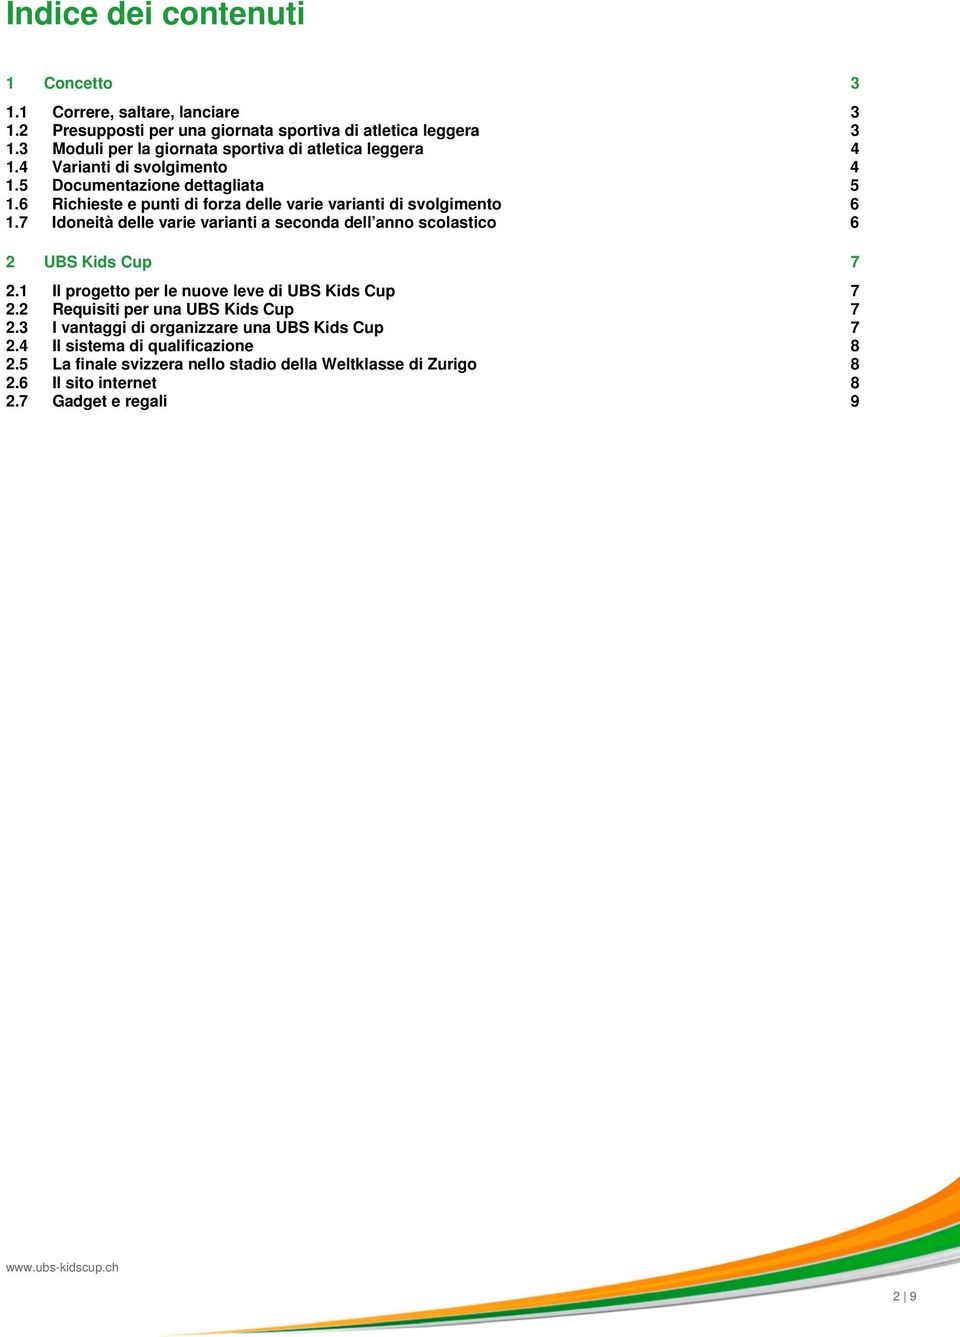 6 Richieste e punti di forza delle varie varianti di svolgimento 6 1.7 Idoneità delle varie varianti a seconda dell anno scolastico 6 2 UBS Kids Cup 7 2.